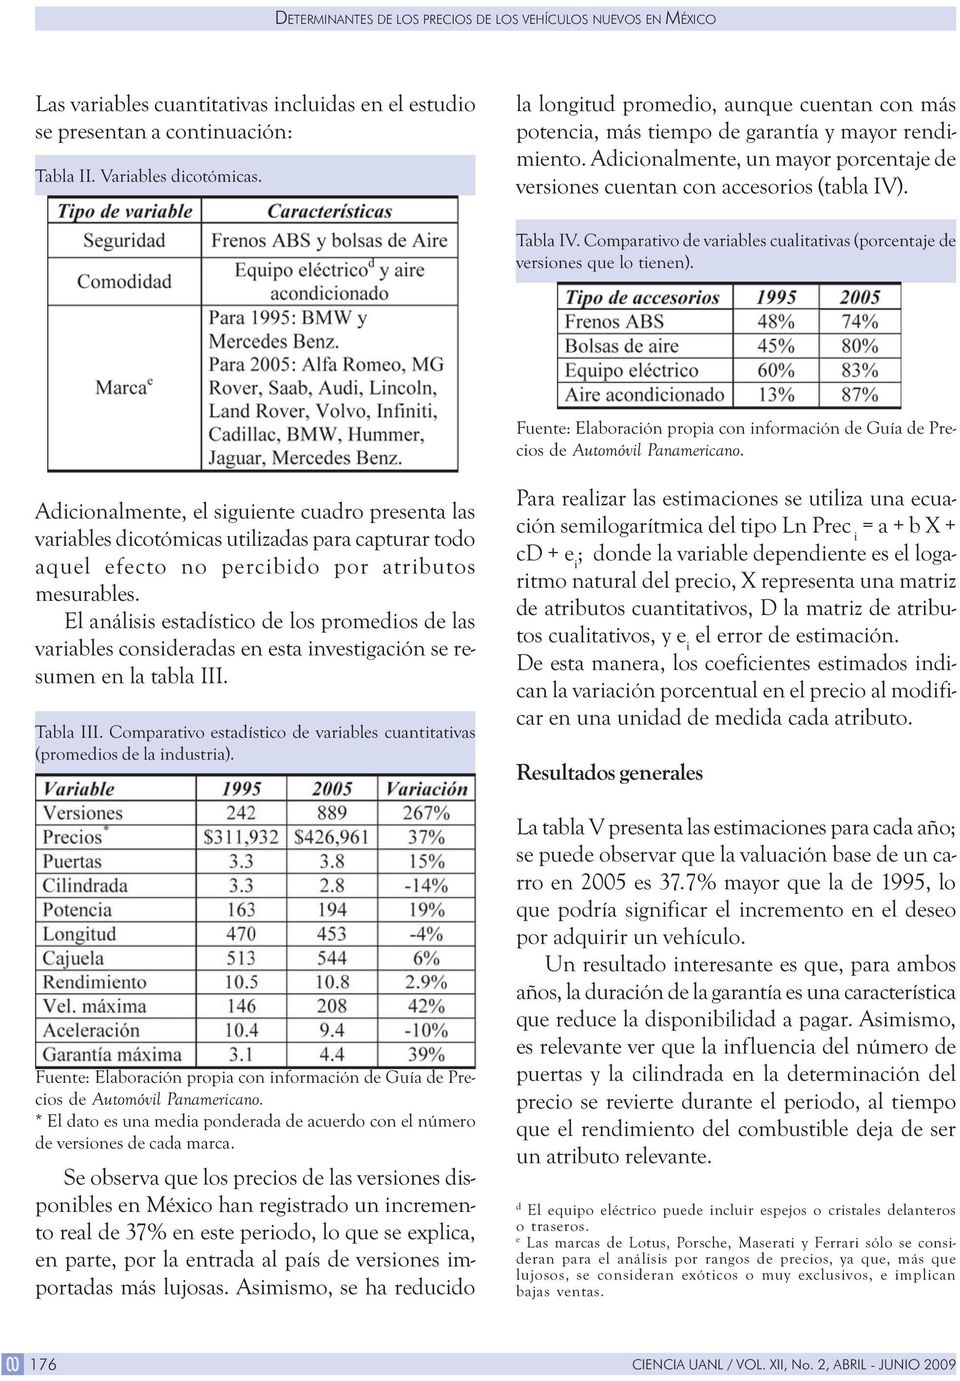 Comparativo de variables cualitativas (porcentaje de versiones que lo tienen). Fuente: Elaboración propia con información de Guía de Precios de Automóvil Panamericano.